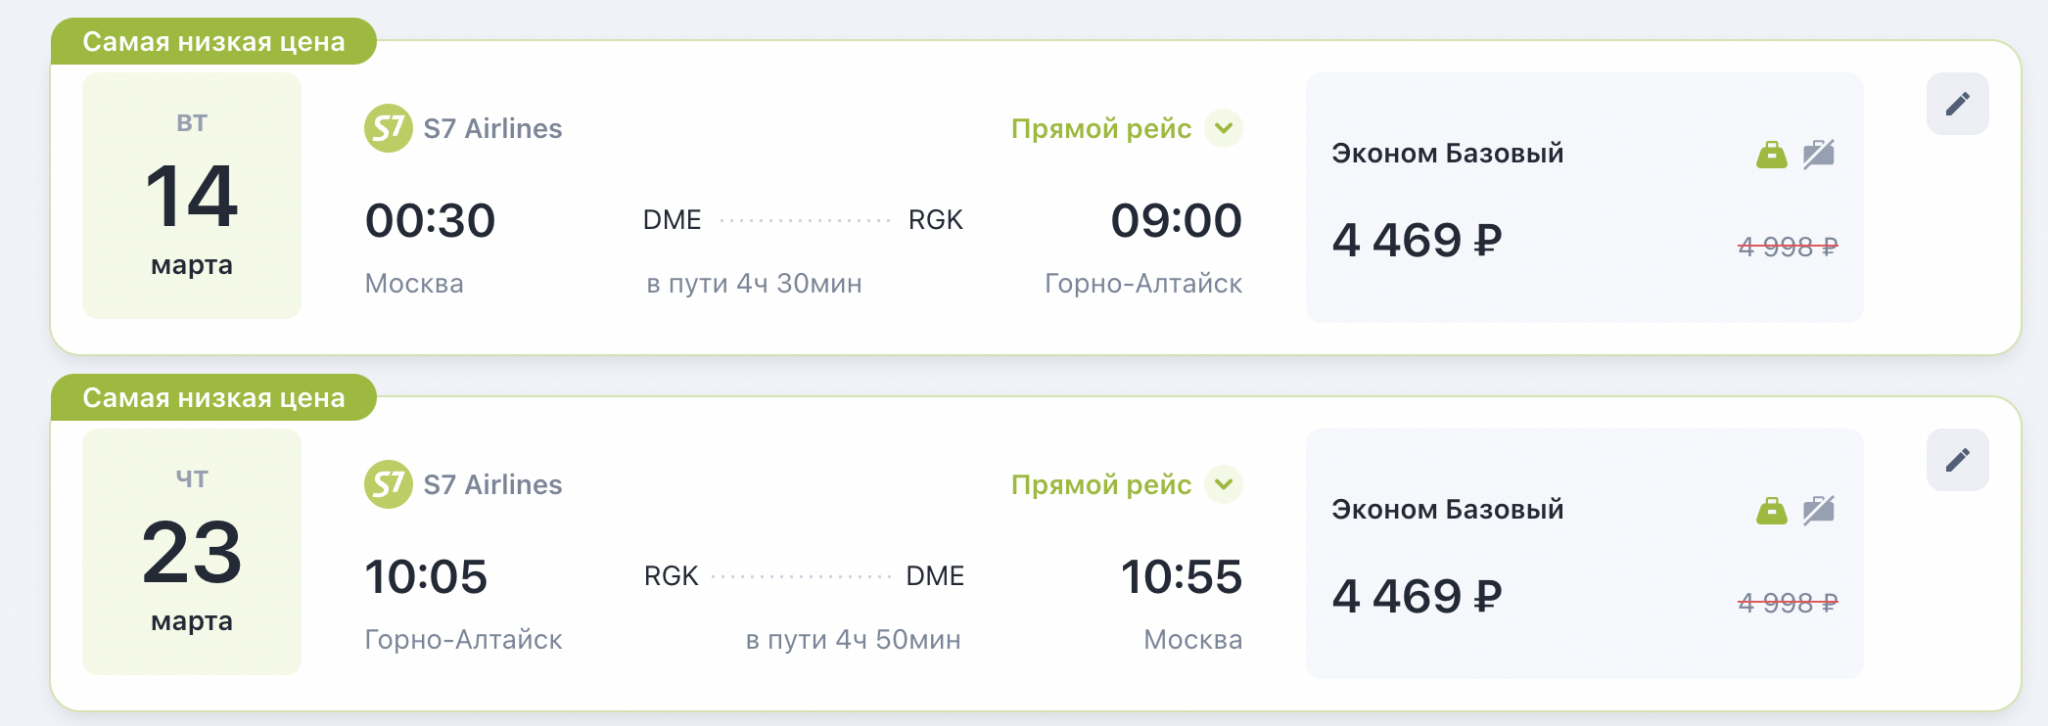 Билеты самолет москва казань туда. Субсидированный билет Казань Москва.